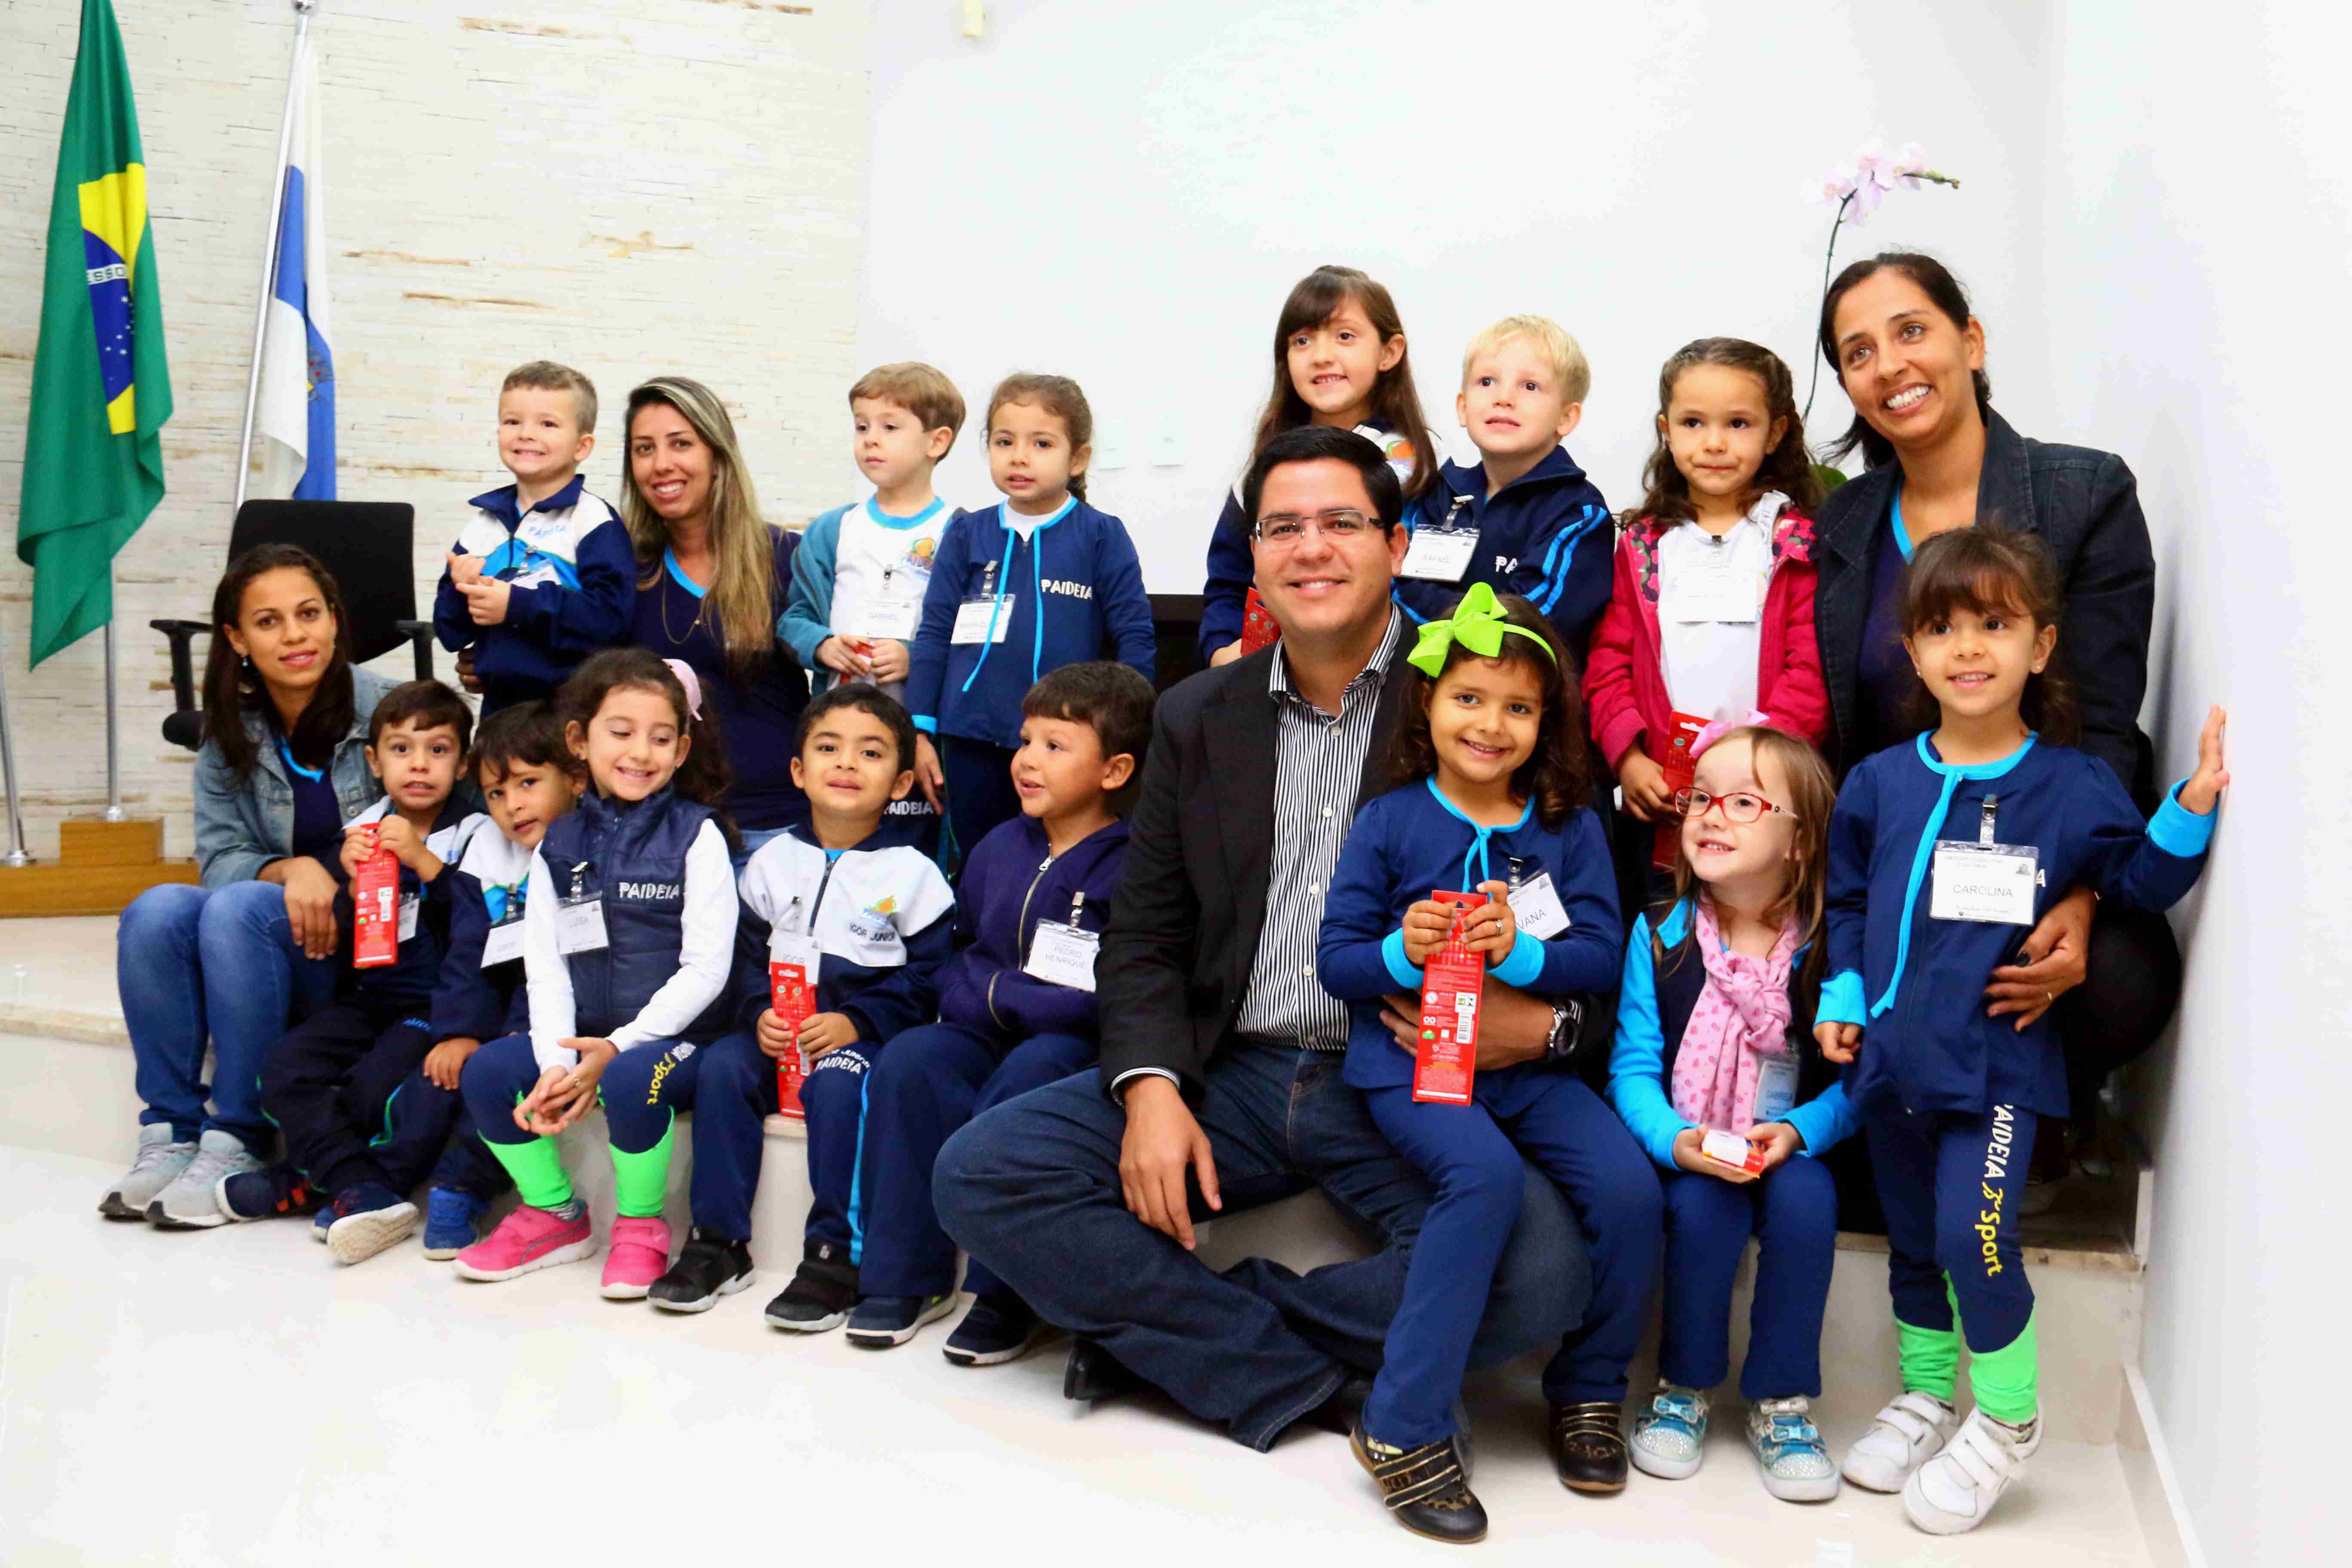 Prefeito recepciona alunos de escolas municipais e particulares (Fotos: Gustavo Grunewald e Luís Gava/PMC)